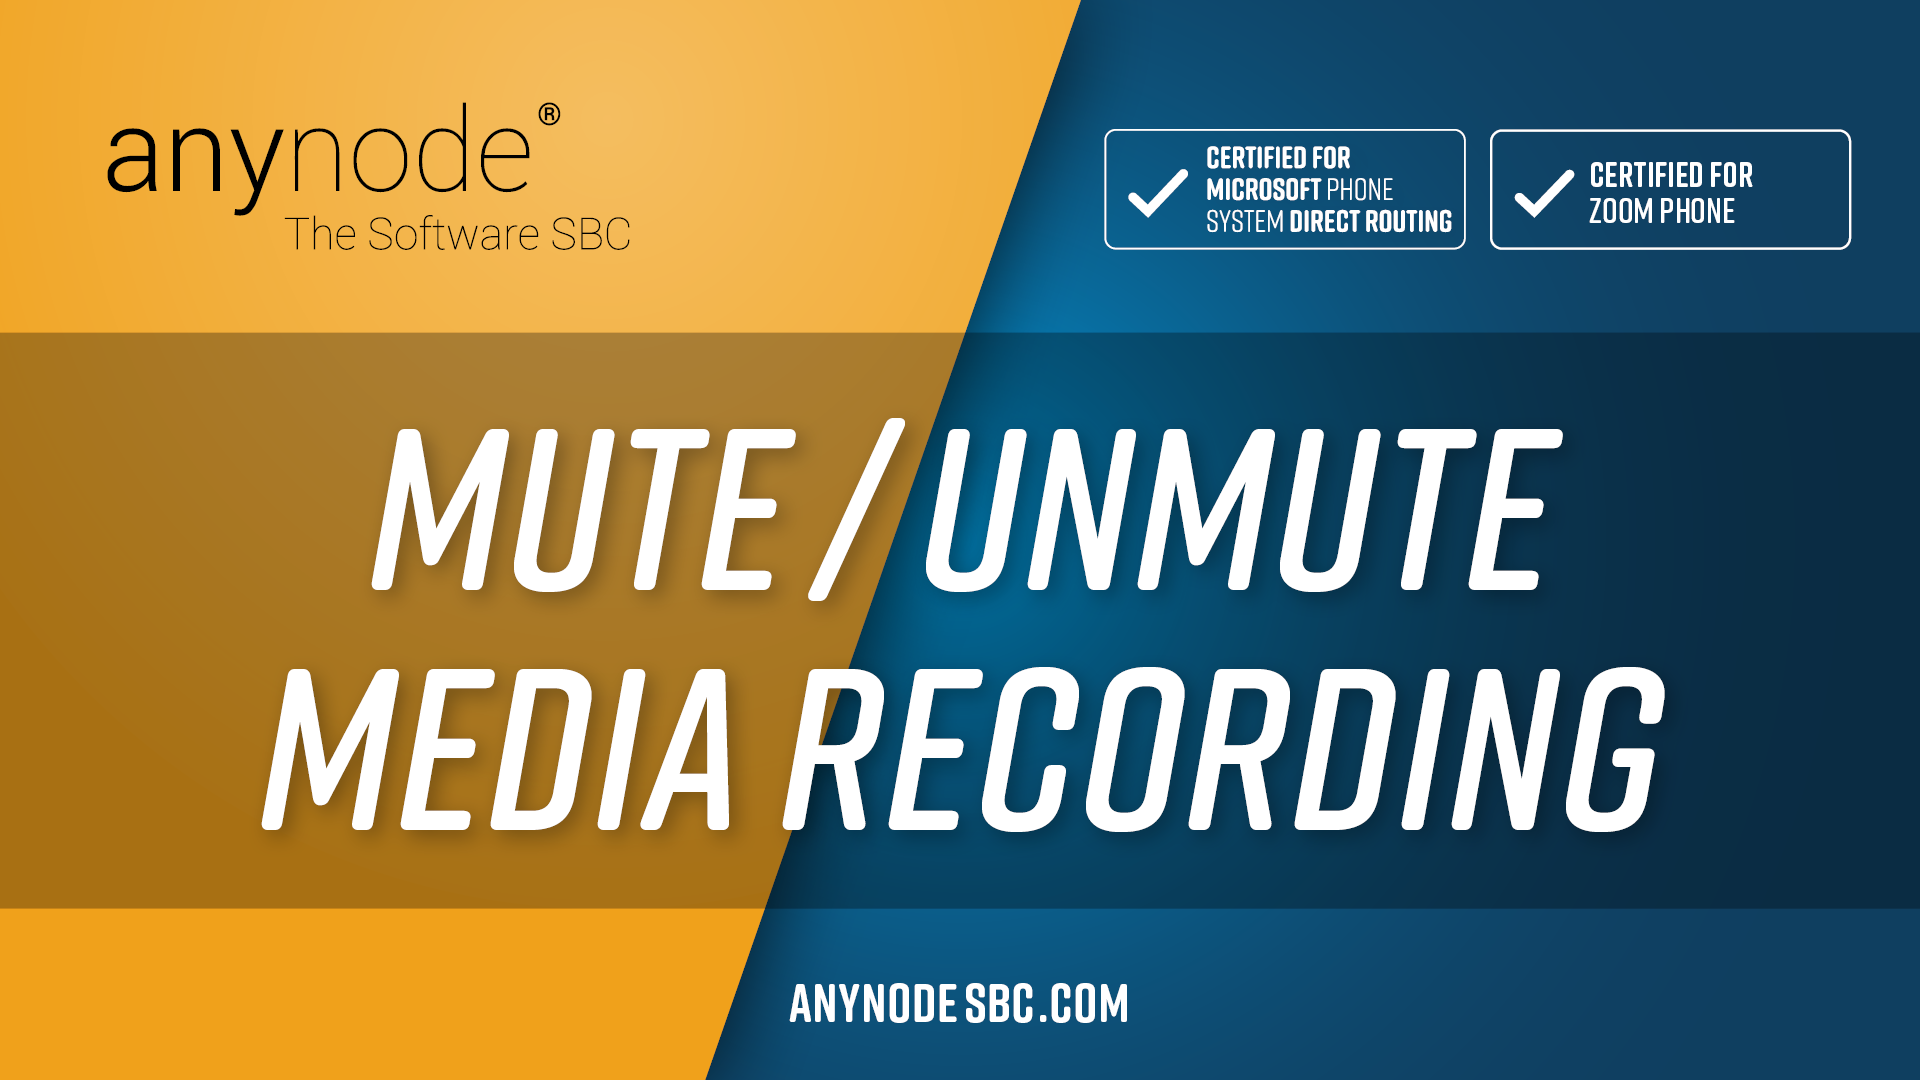 mute_unmute_media_recording